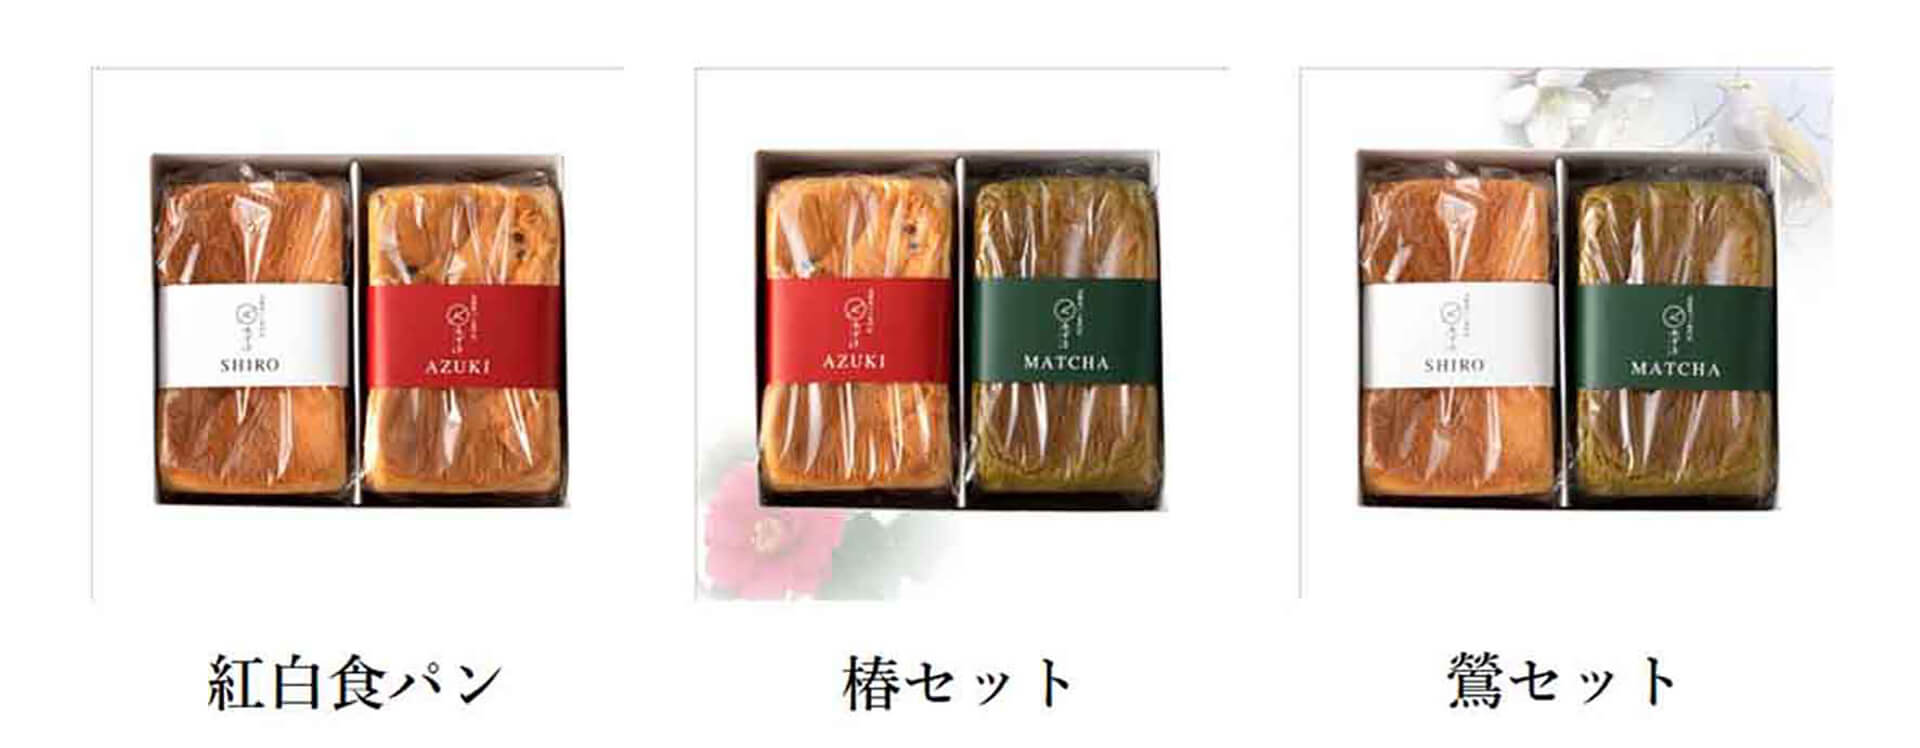 高級食パン専門店『あずき』通信ボックス